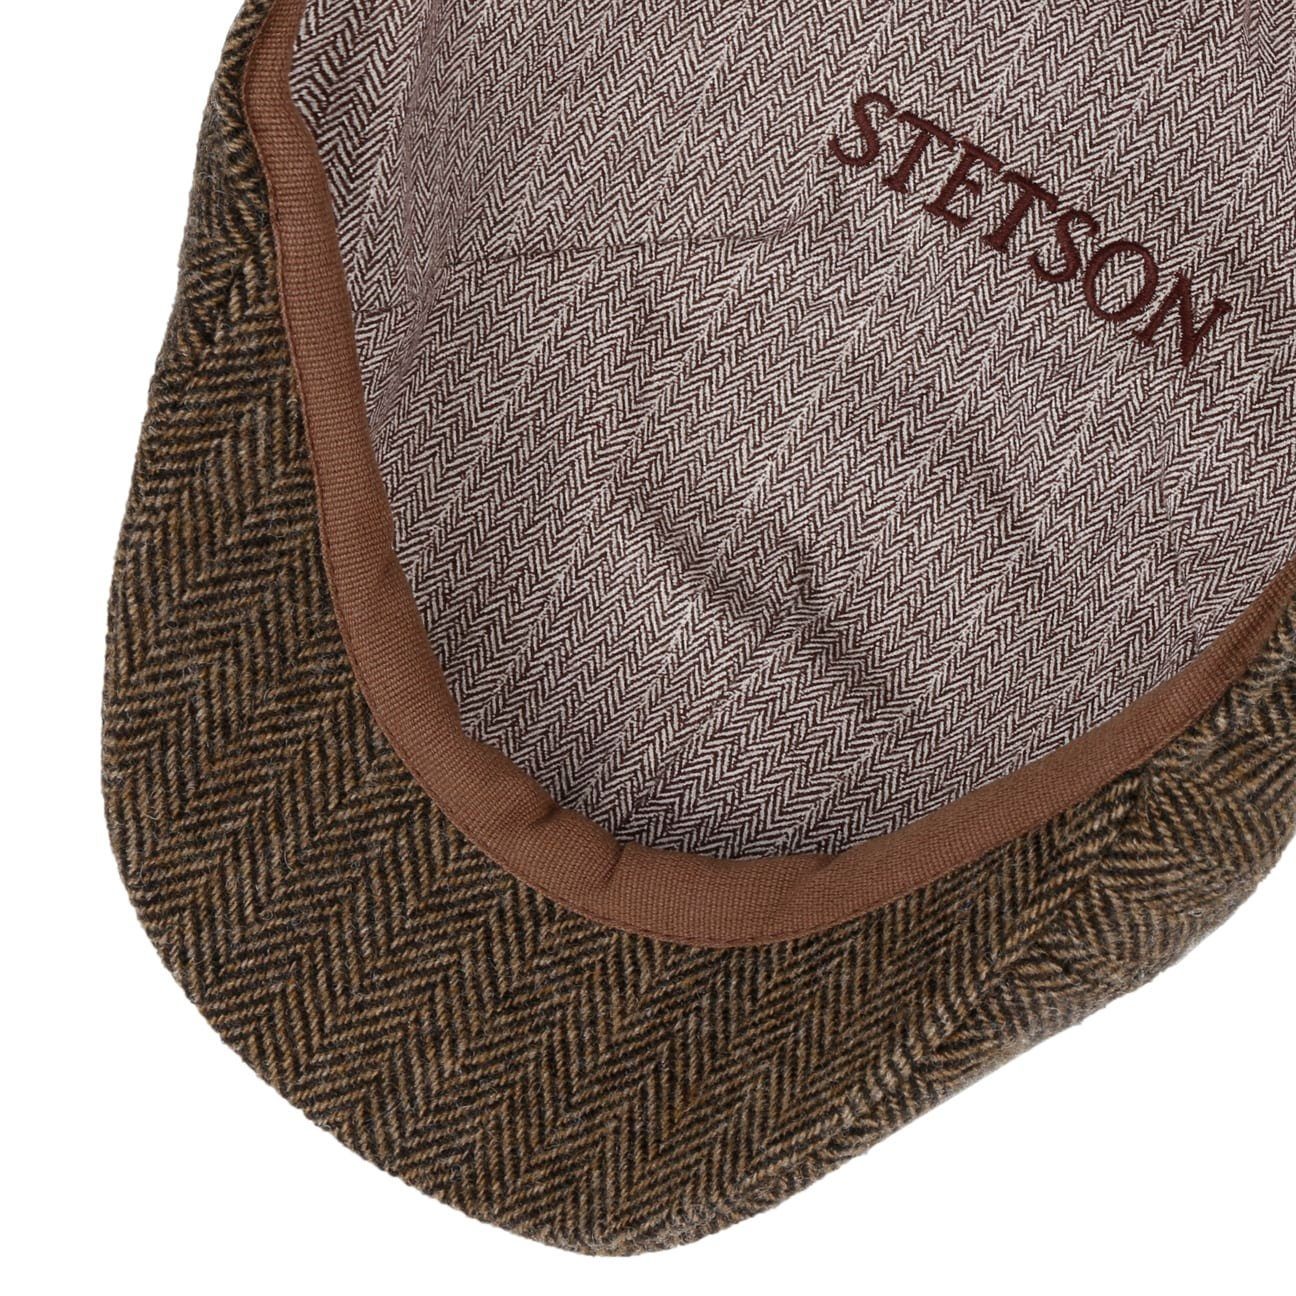 Stetson Flat Cap (1-St) Flatcap braun-schwarz Schirm mit